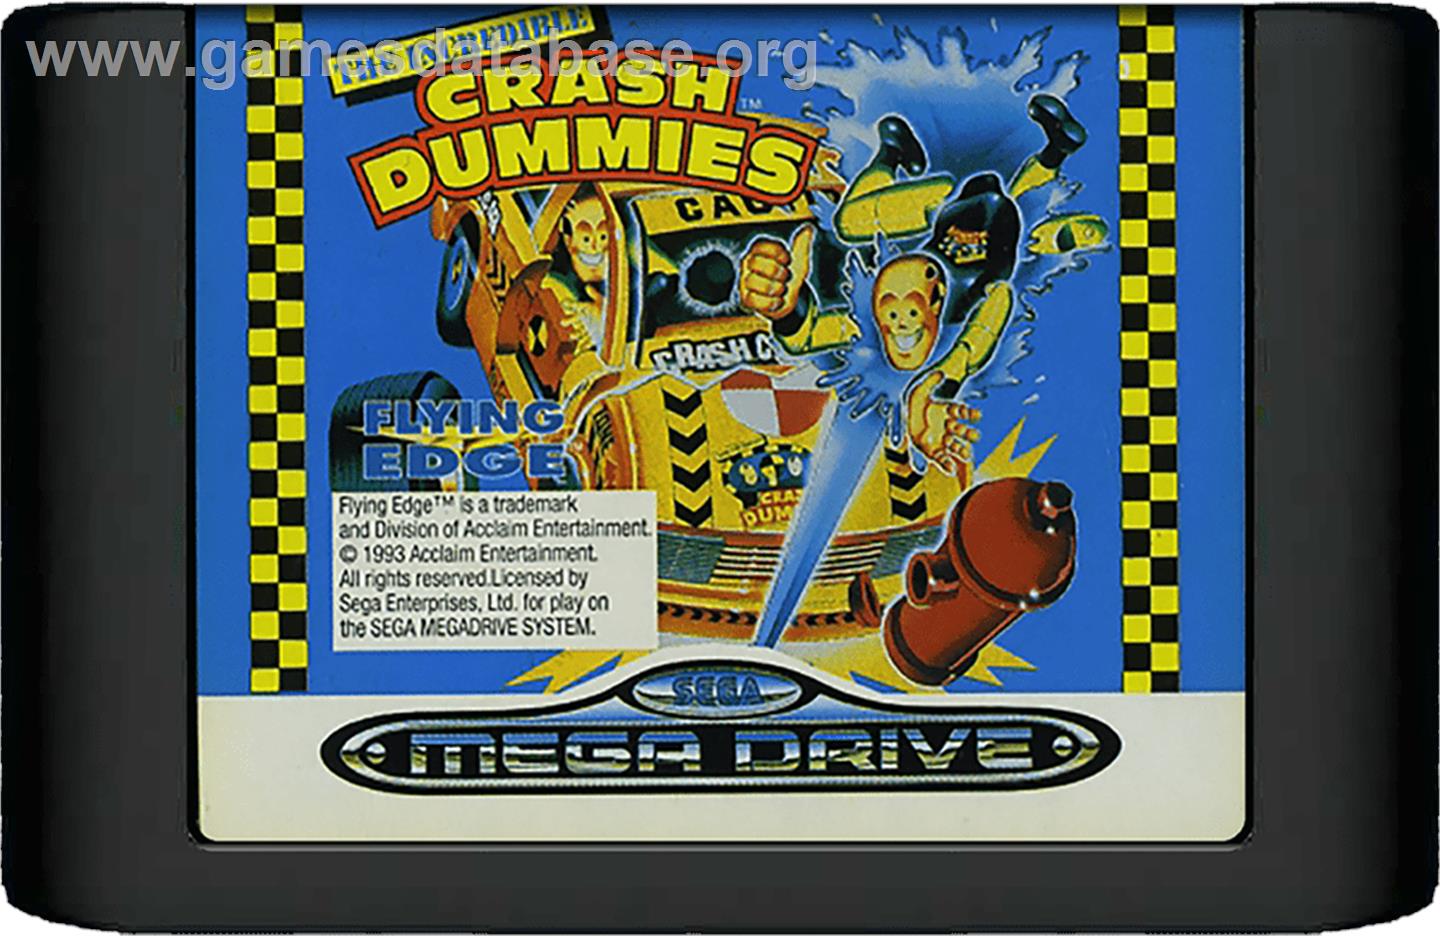 Incredible Crash Dummies, The - Sega Genesis - Artwork - Cartridge